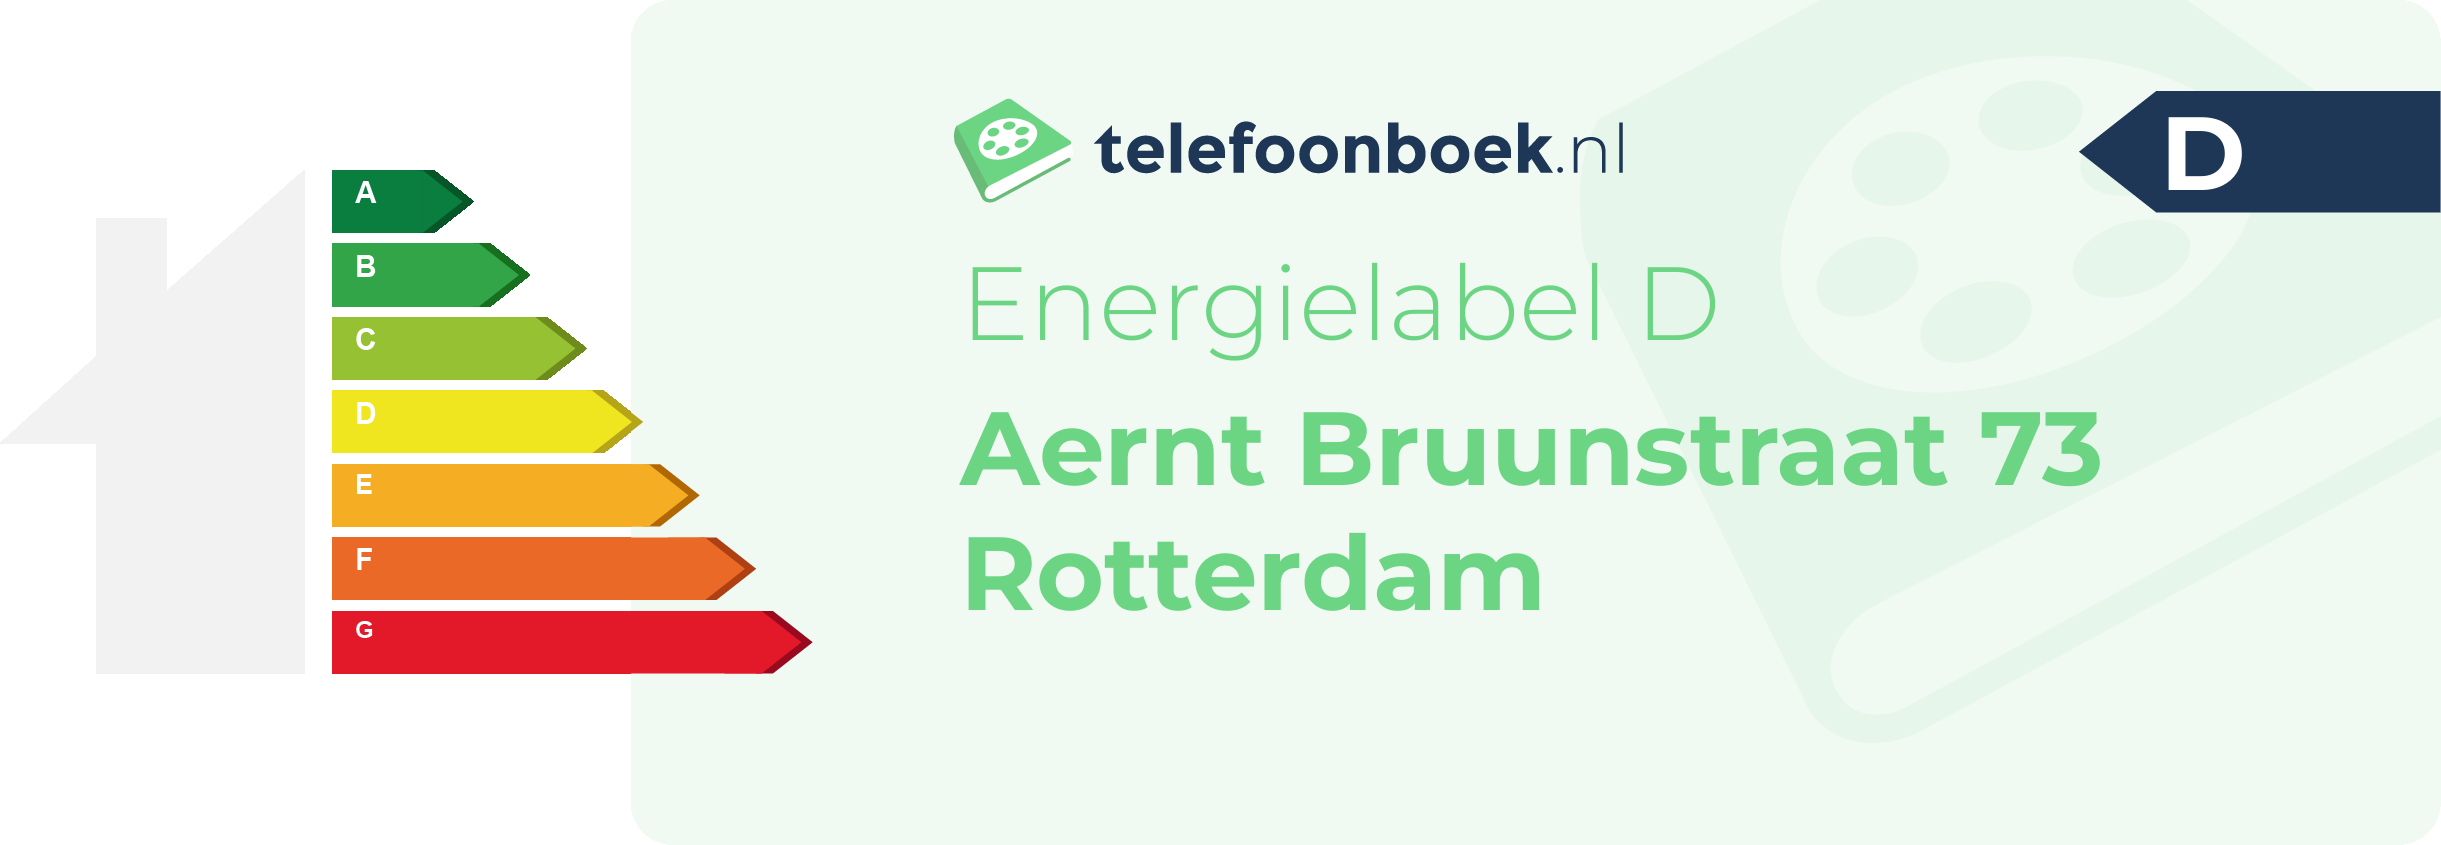 Energielabel Aernt Bruunstraat 73 Rotterdam